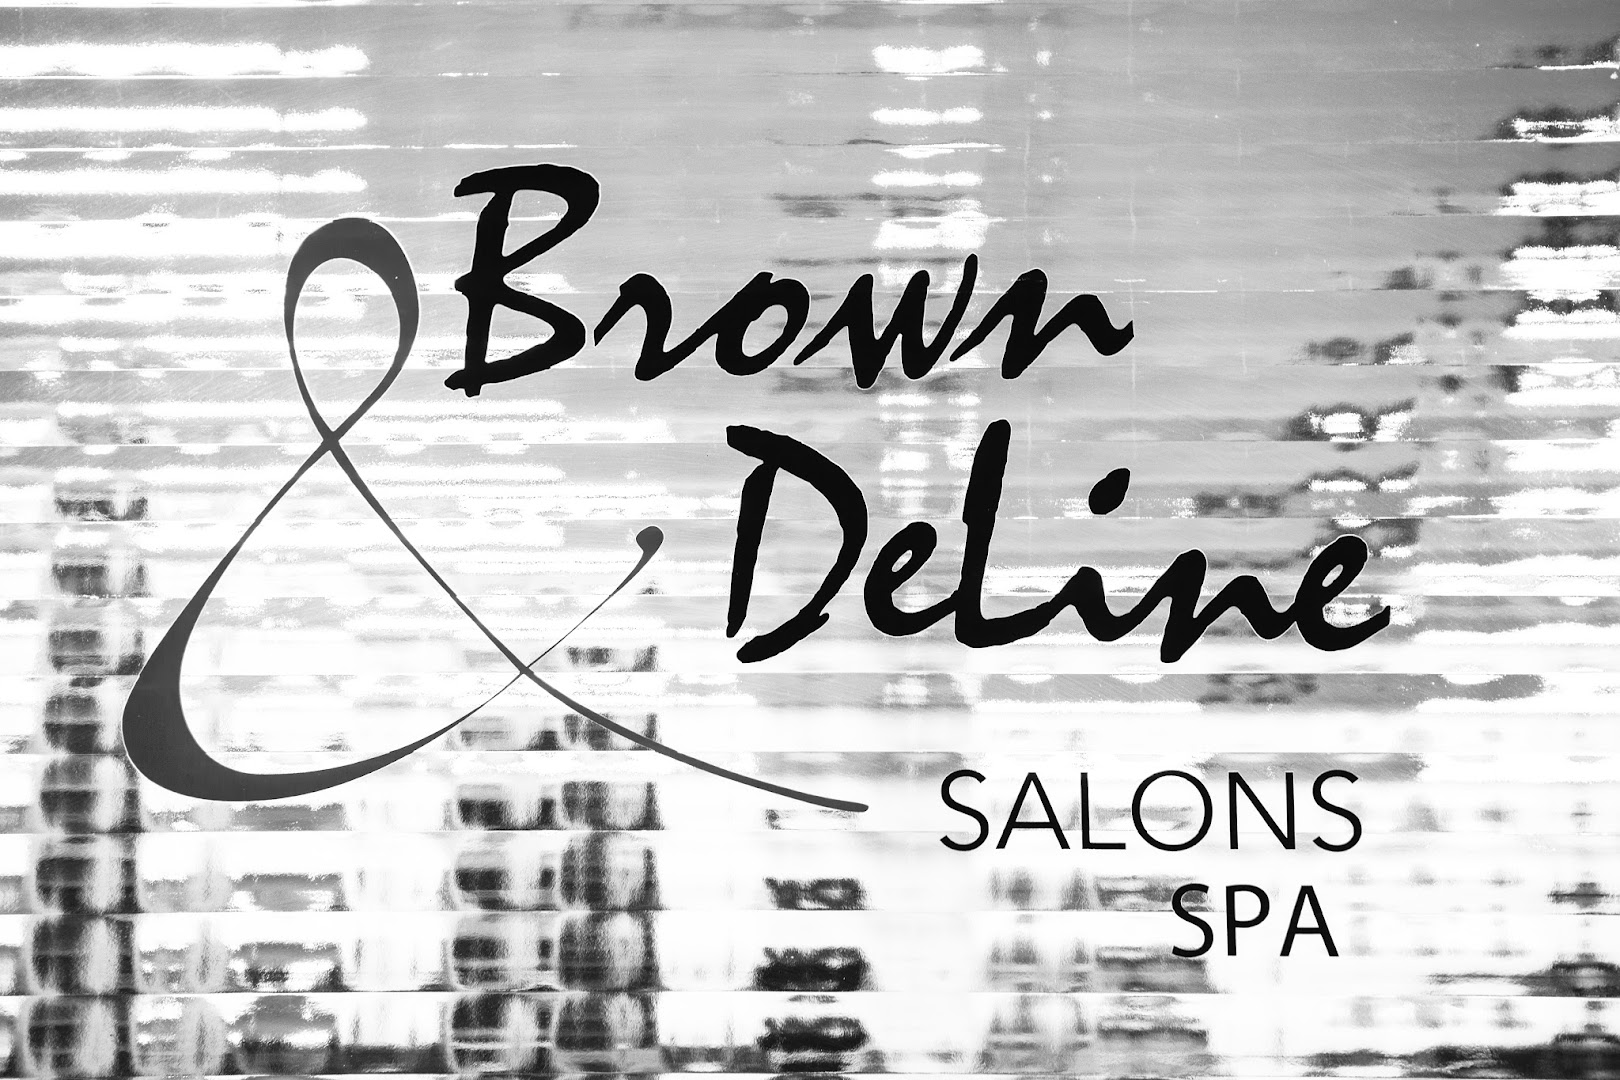 Brown & DeLine Salon